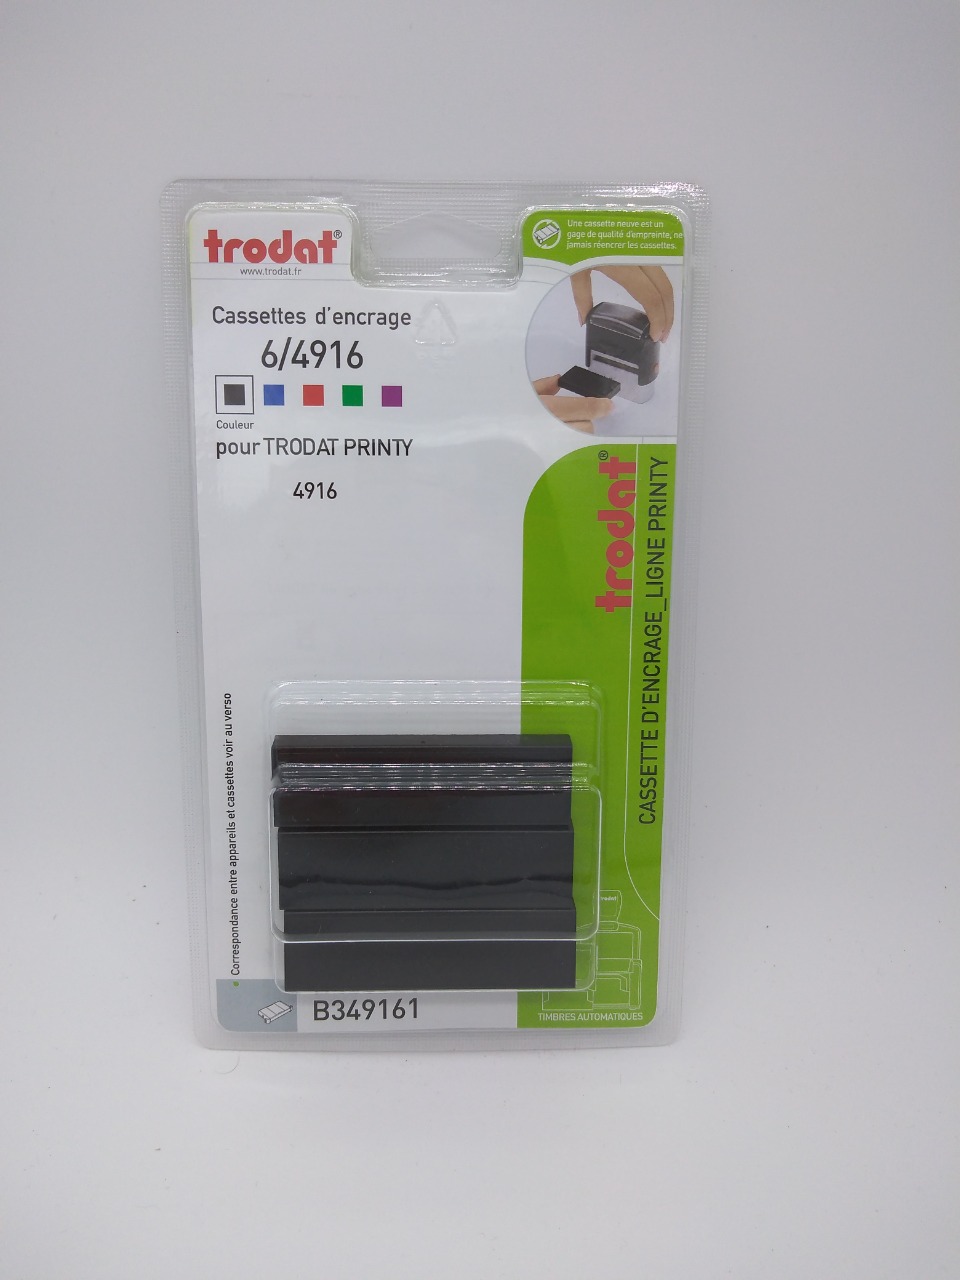 TRODAT Recharge tampon trodat 4916 noir blister 3 unités. 6/4916